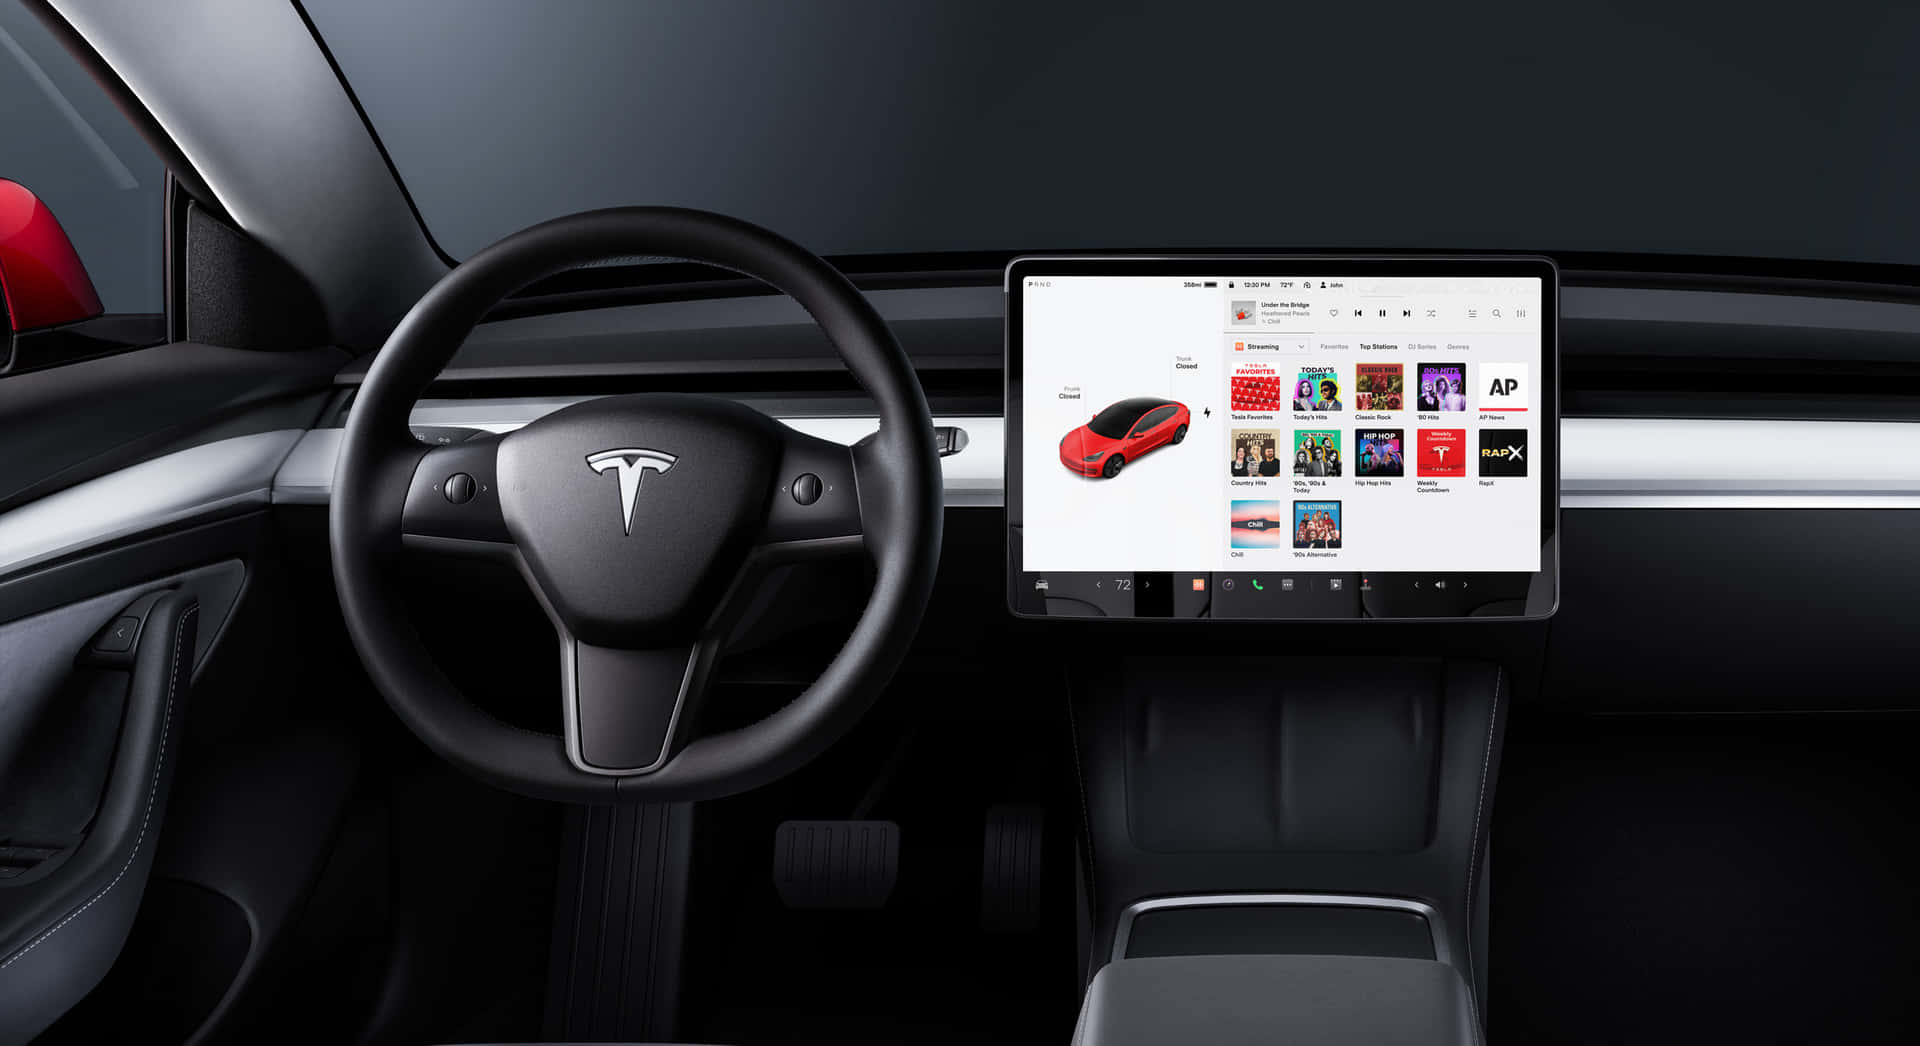 Immaginedel Gestore Dell'auto Tesla